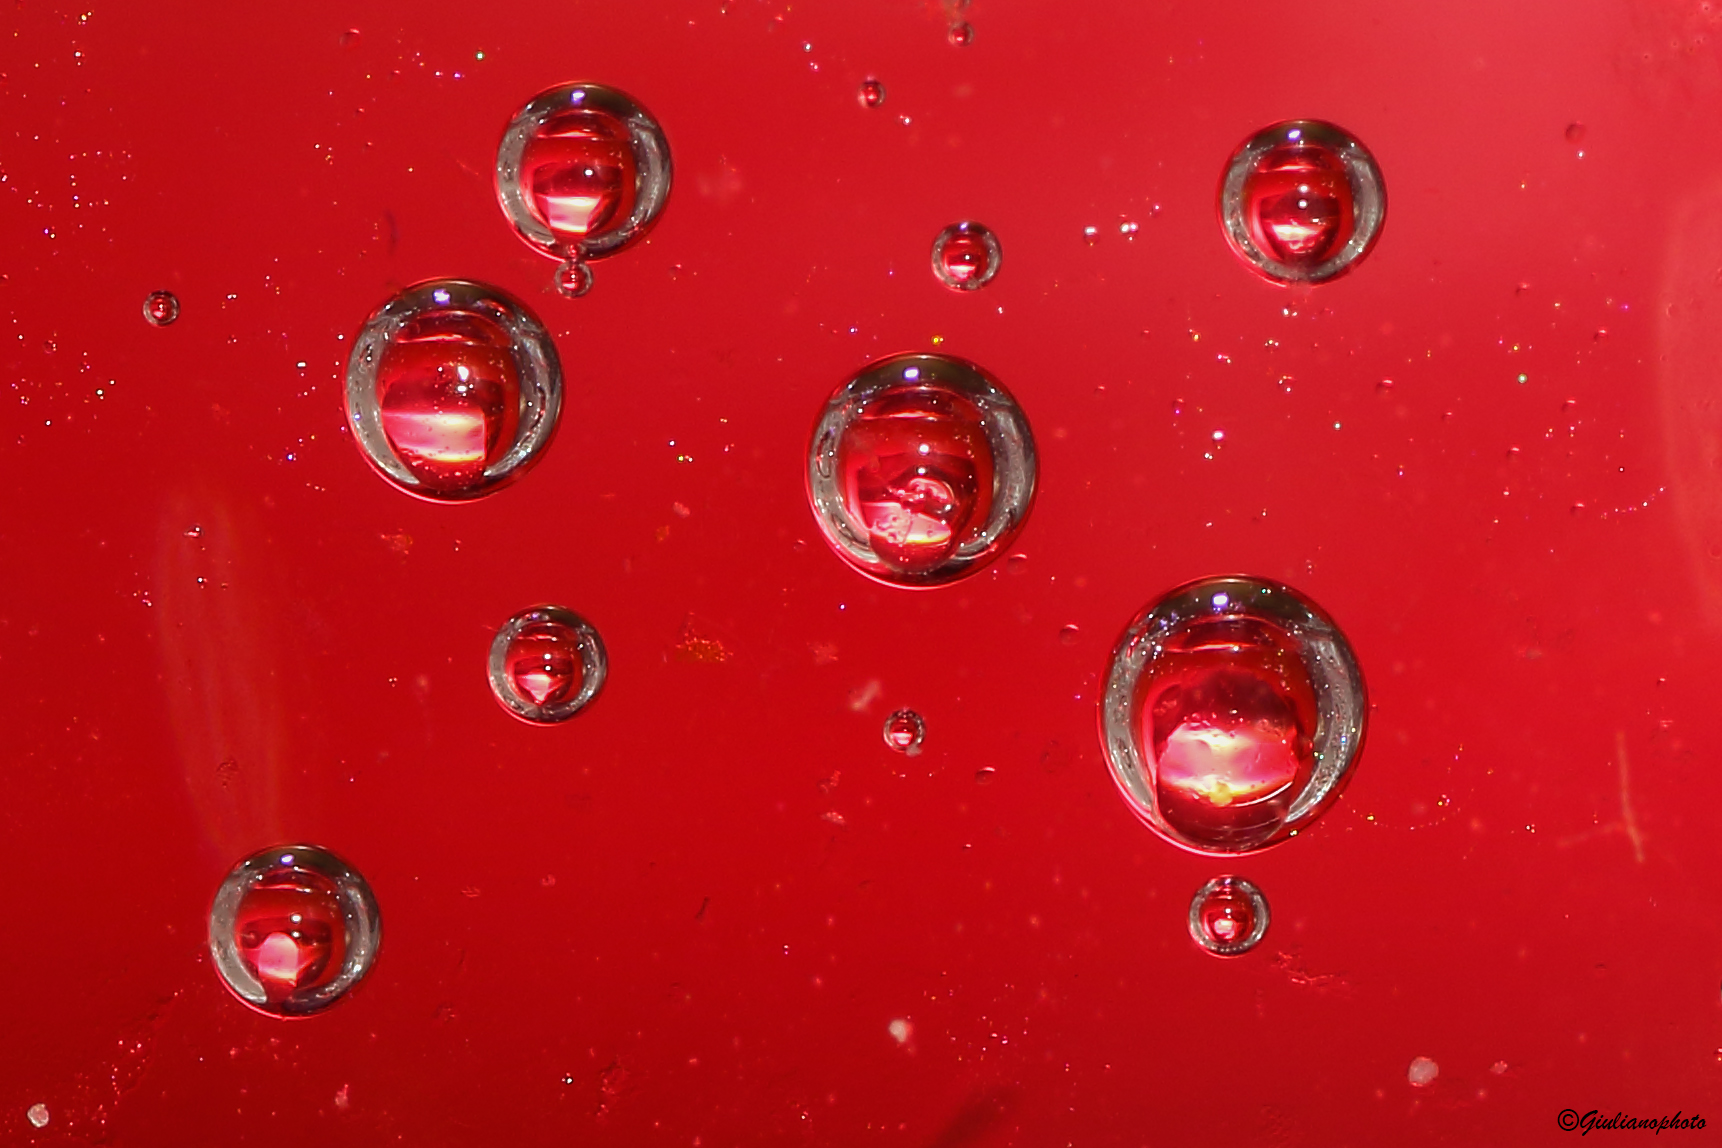 Bubbles (experiment #65)...